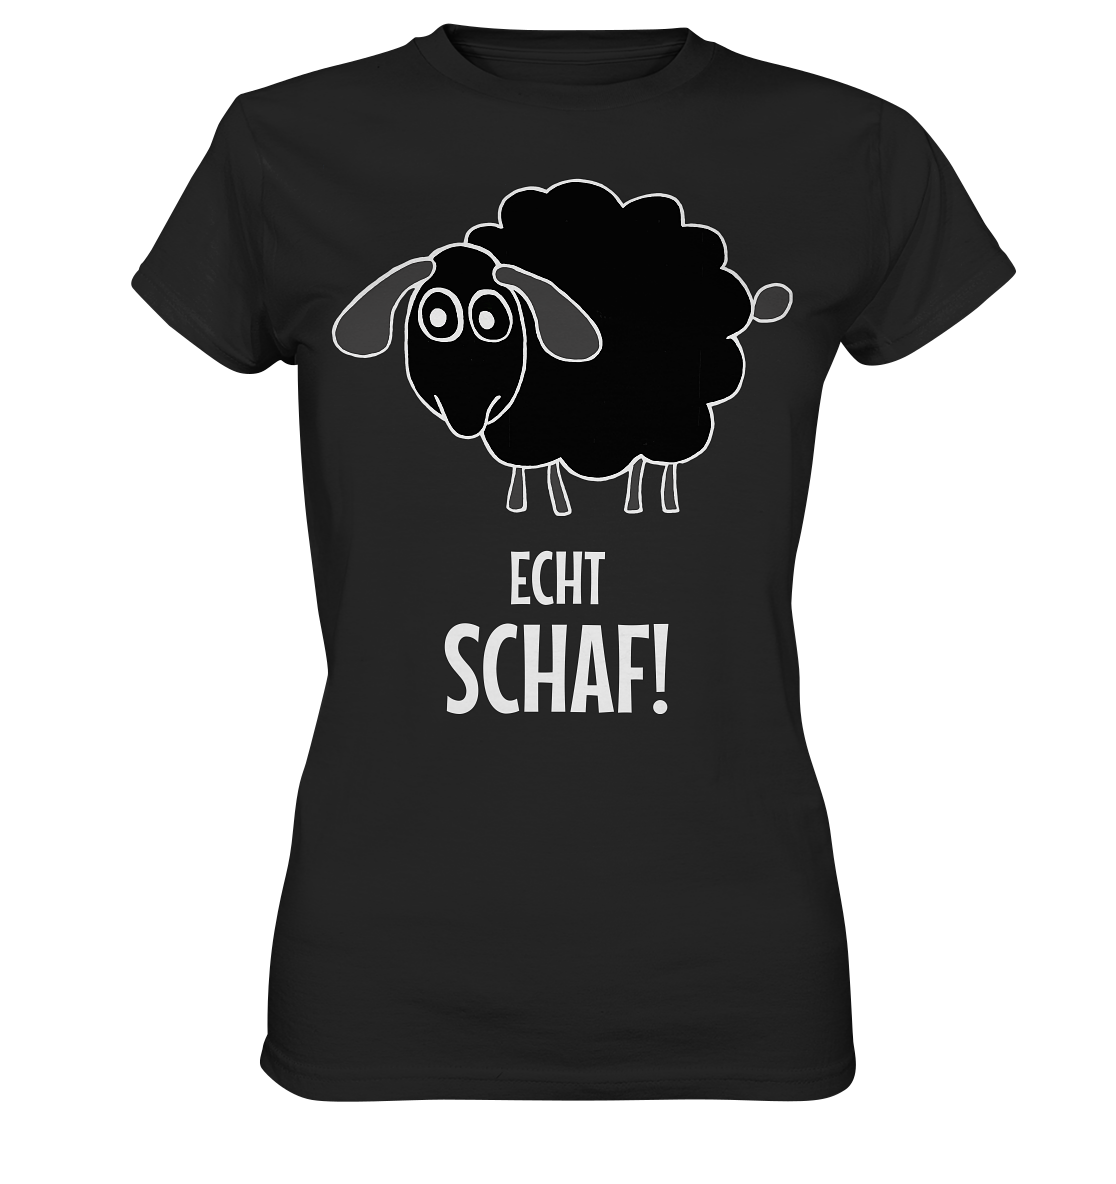 Echt Schaf! - Ladies Premium Shirt